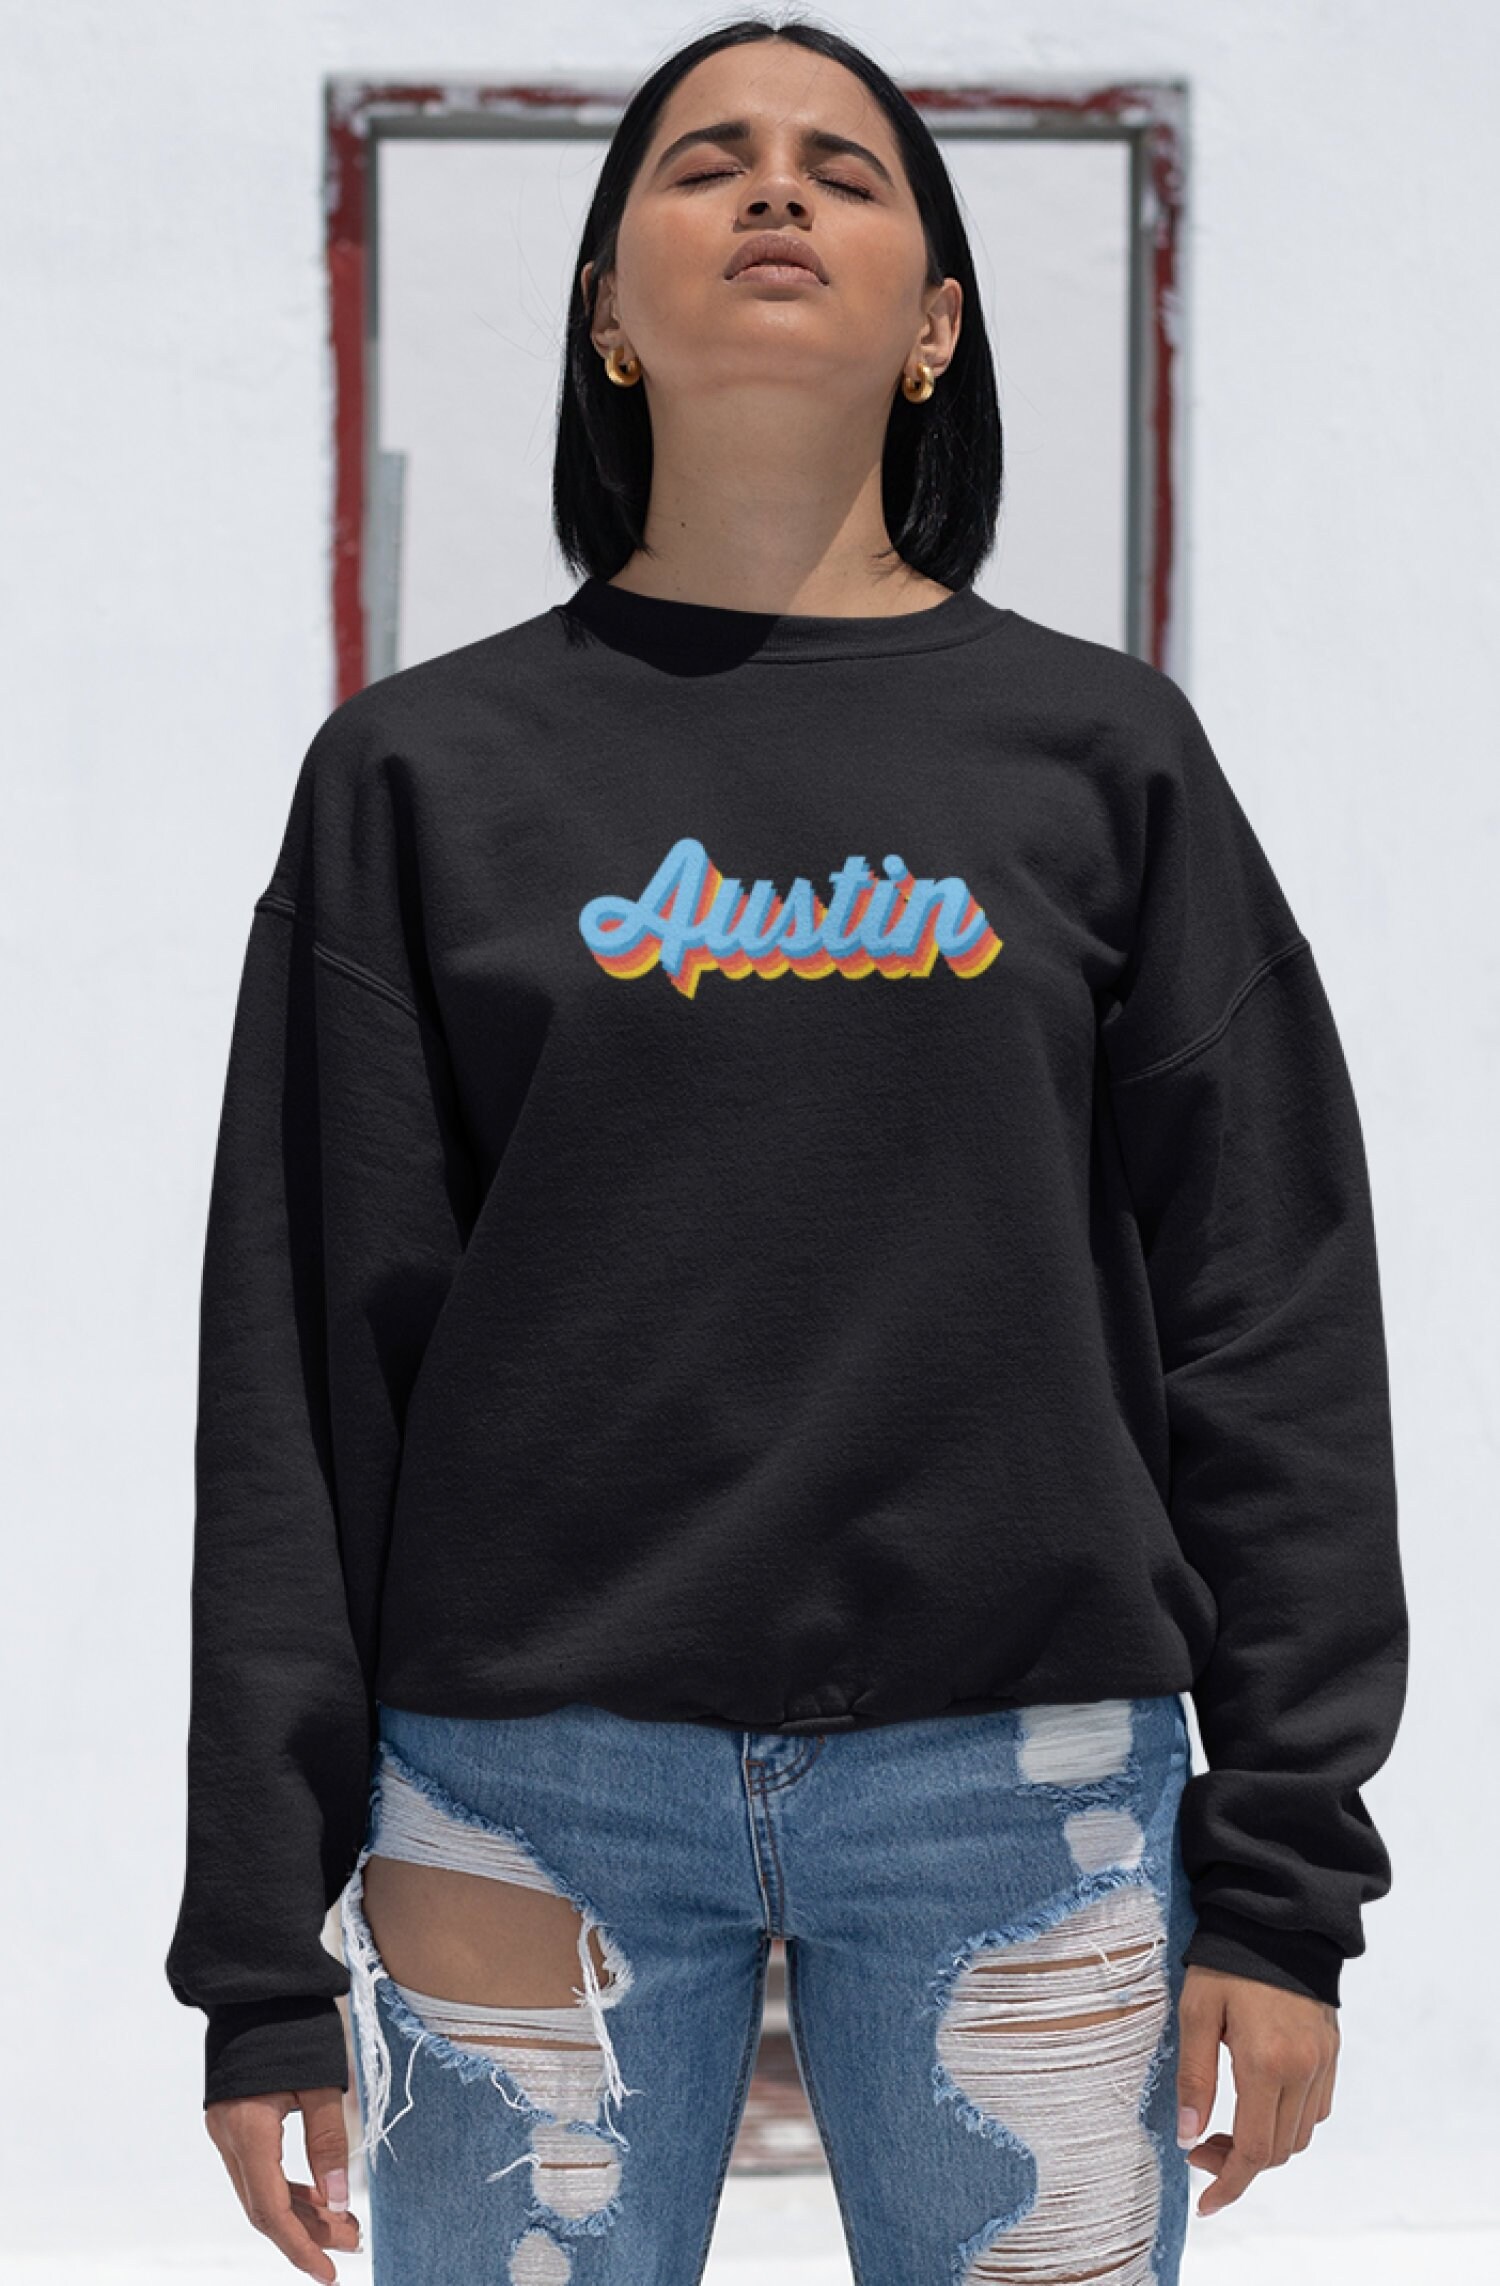 Austin Sweatshirt Retro Graphic Texas Sweatshirt Austin TX - Etsy